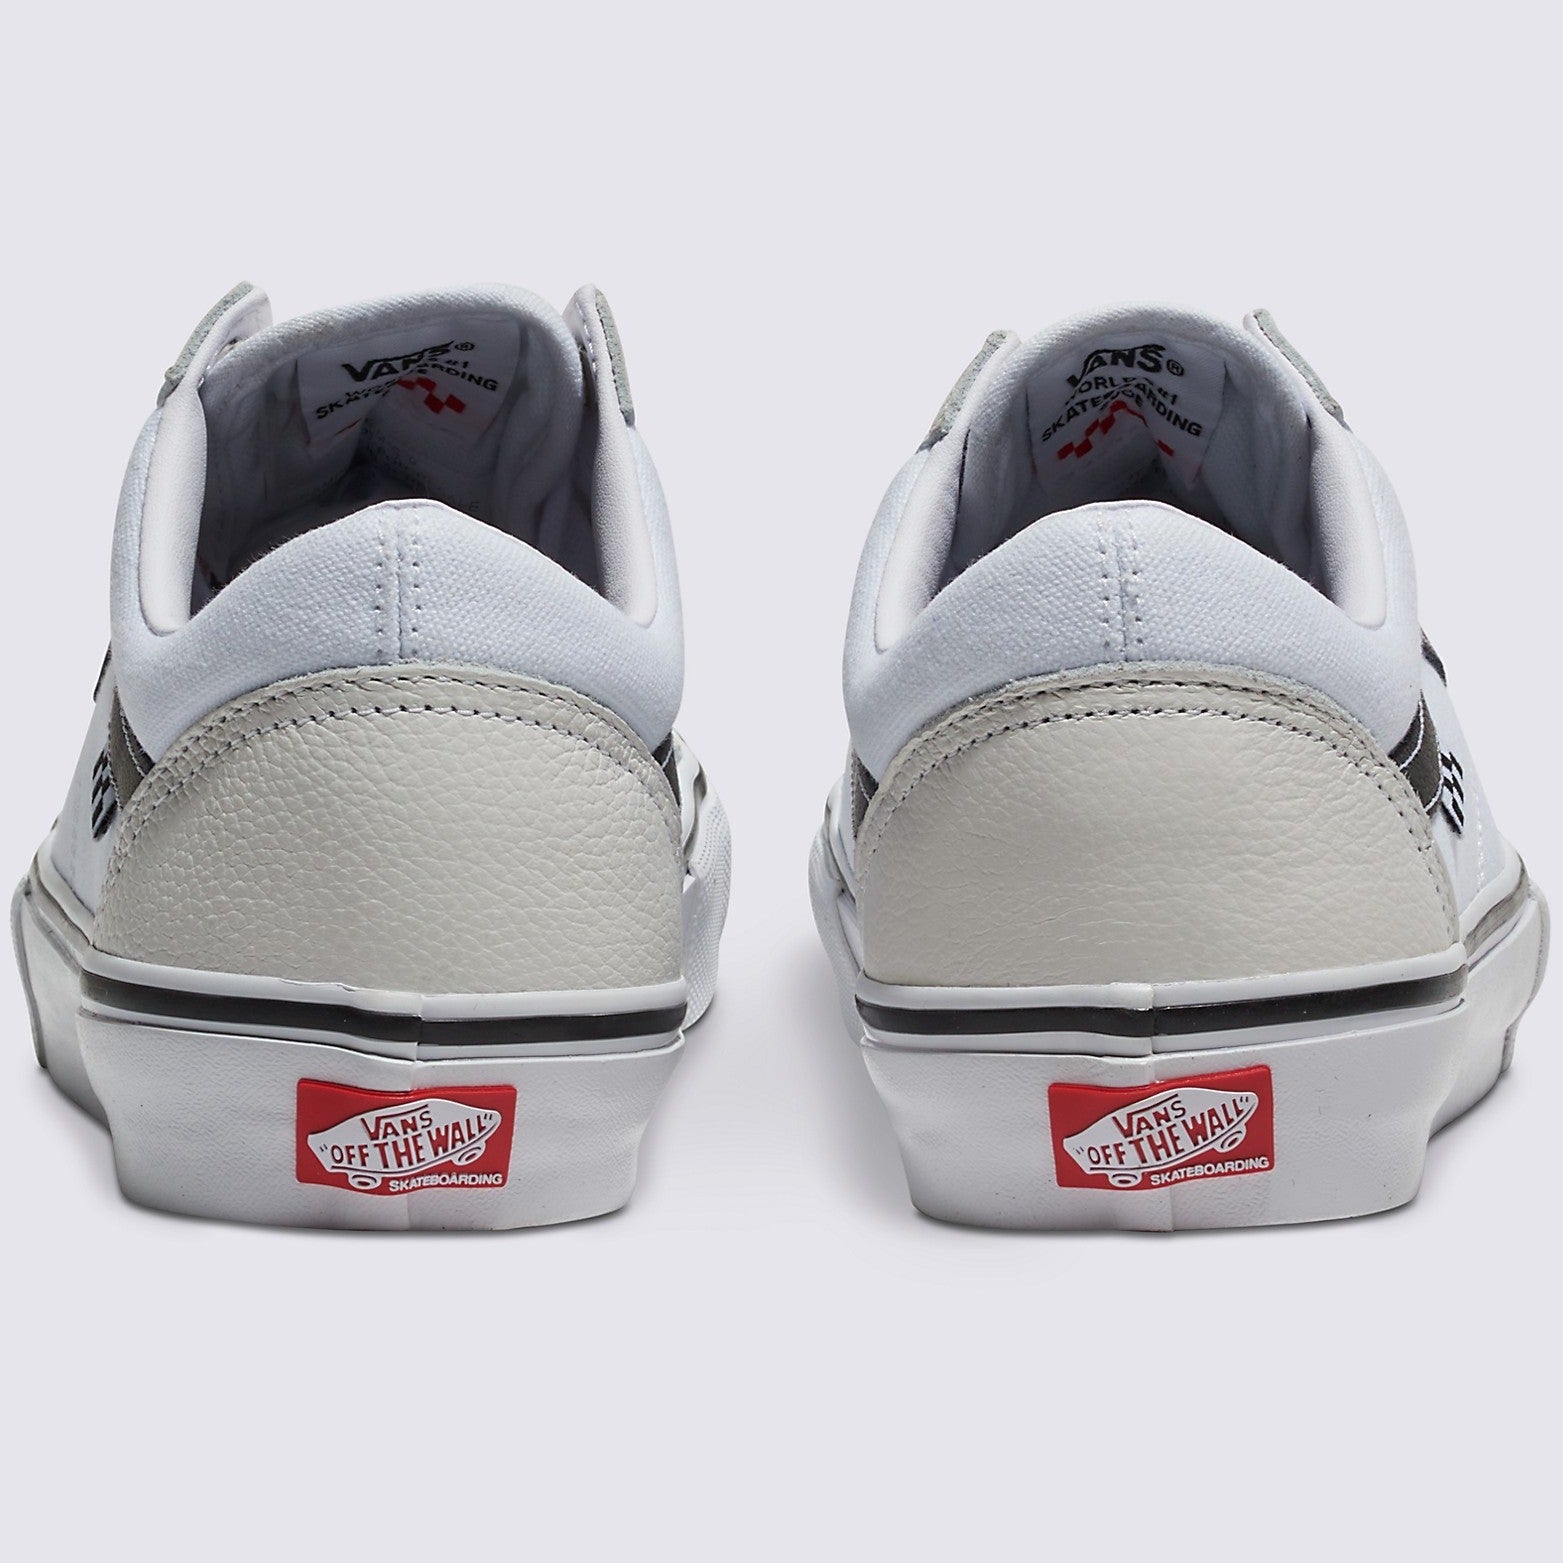 White/White Leather Skate Old Skool Vans Shoes Back